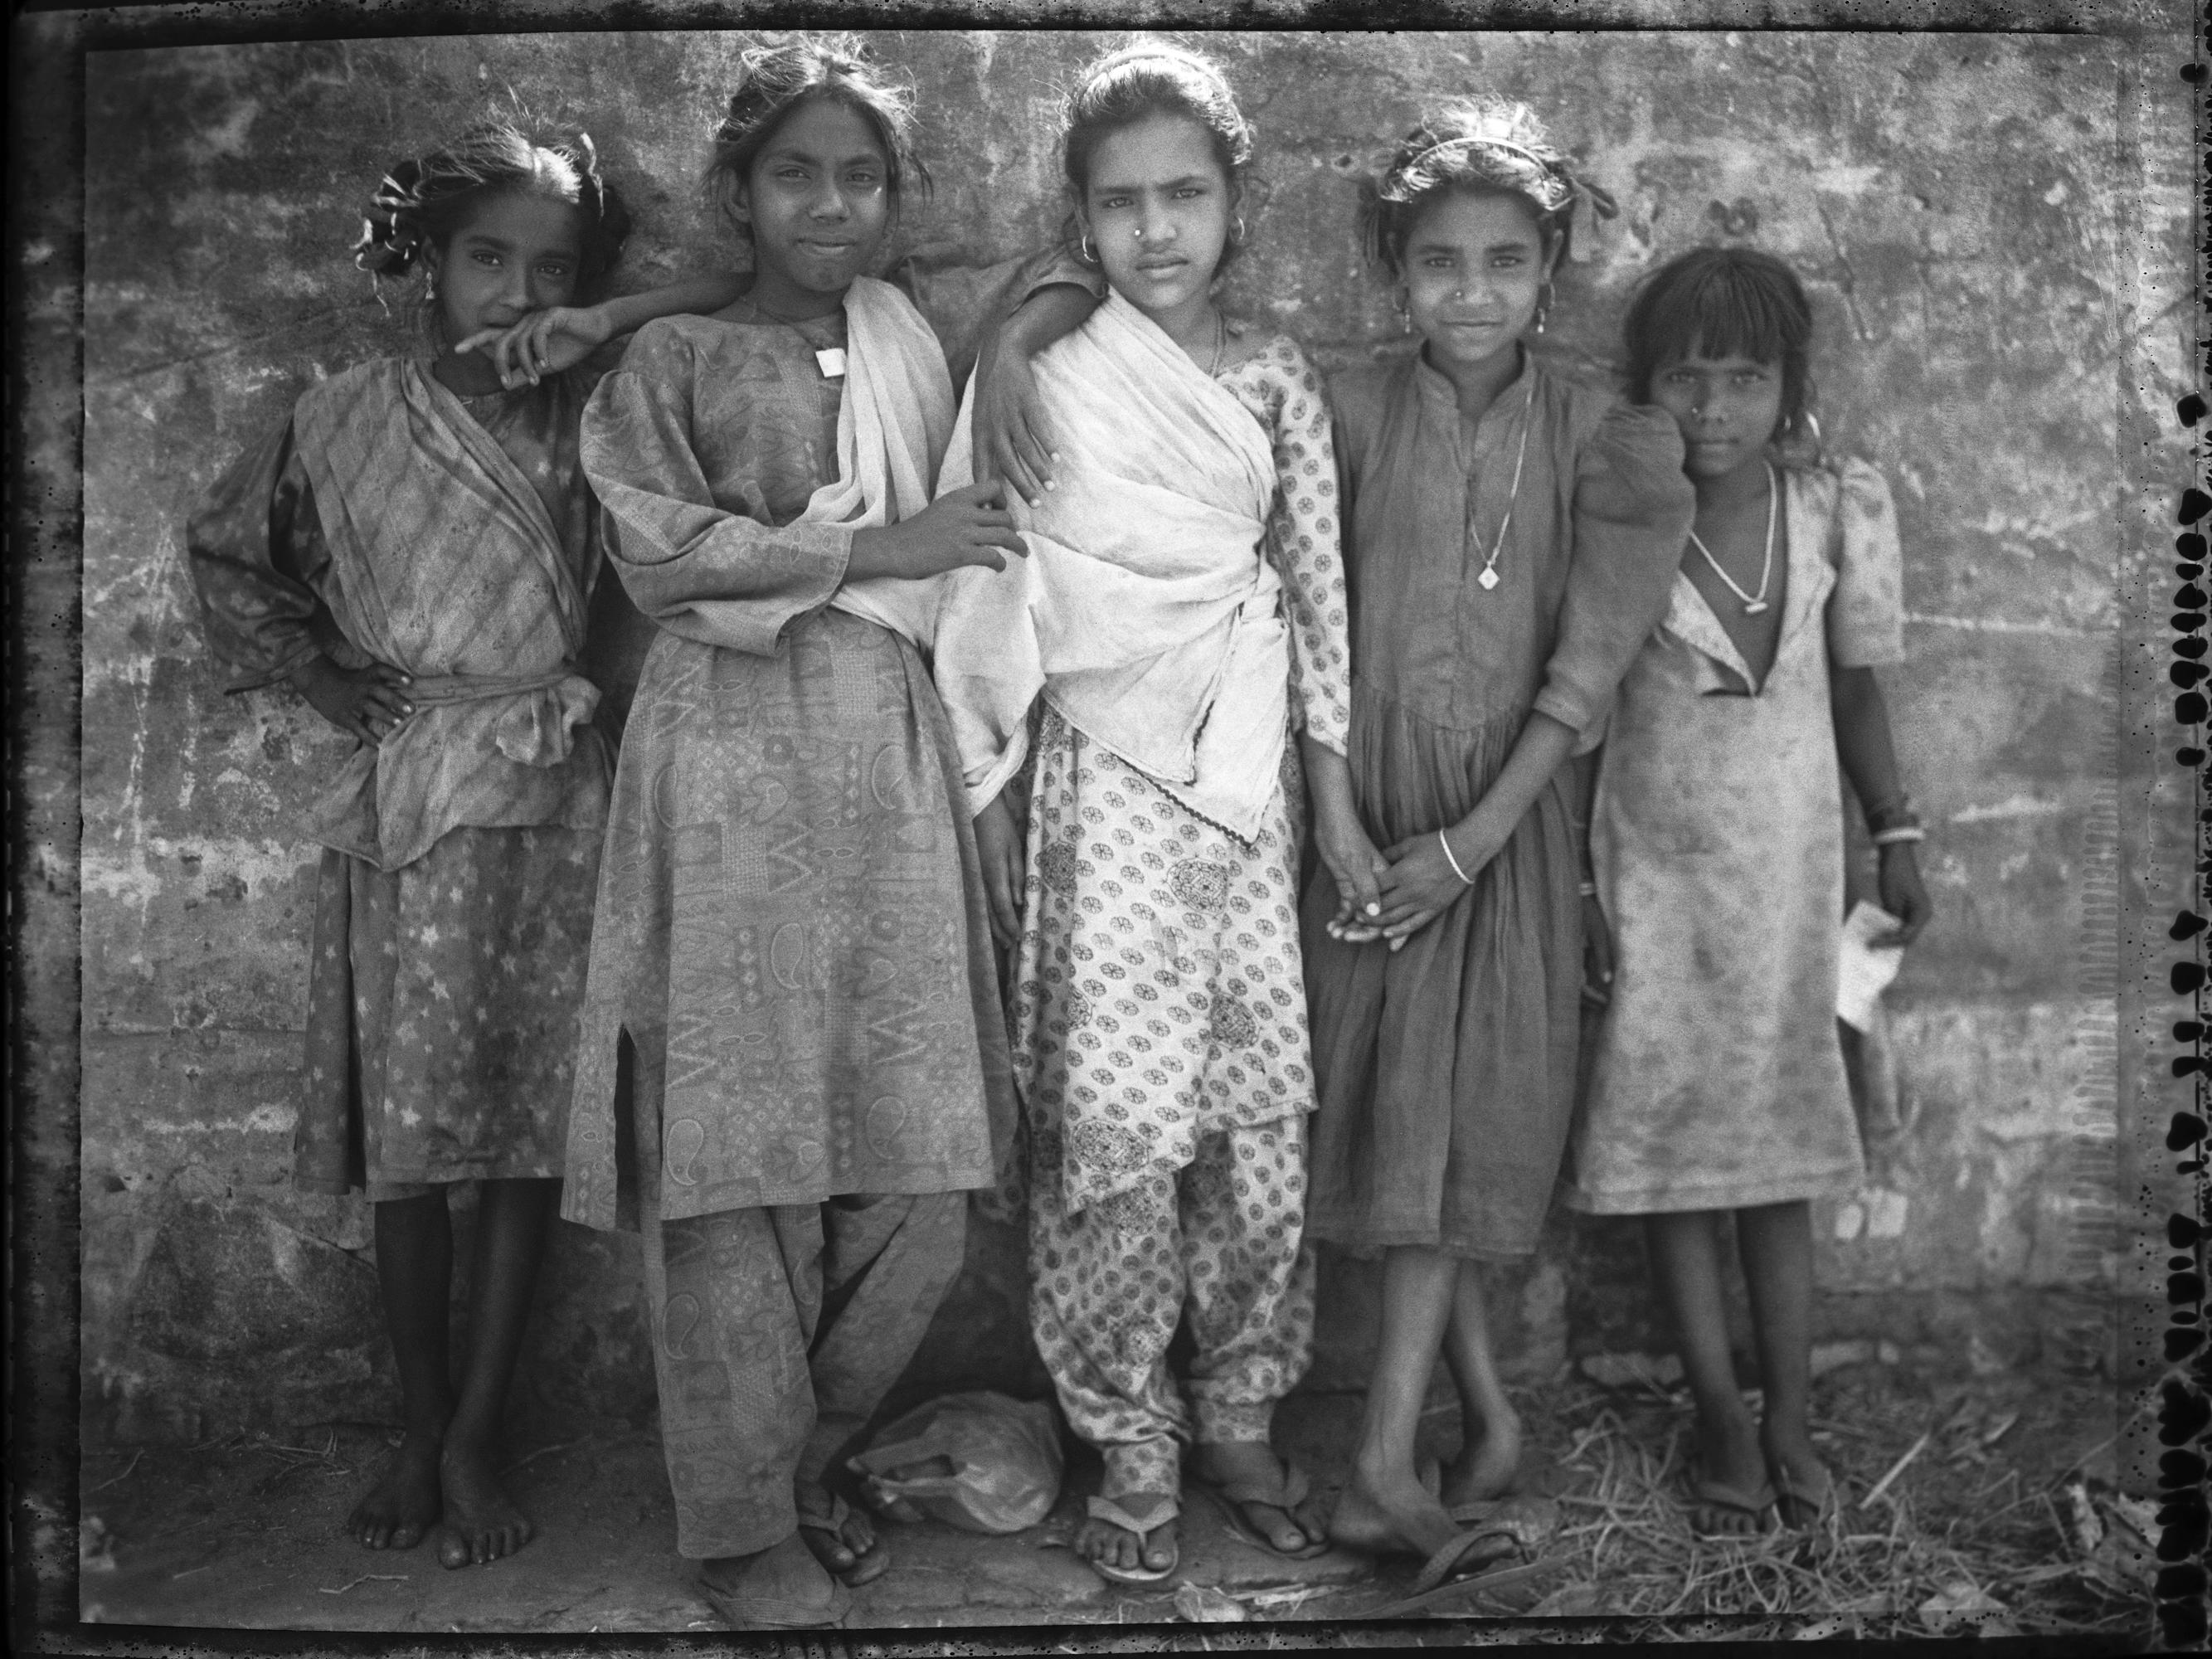 Carlo Bevilacqua Portrait Photograph – Fünf stehende indische Kinder  Rajastan – Indien – (aus  indische Stillleben-Serie)